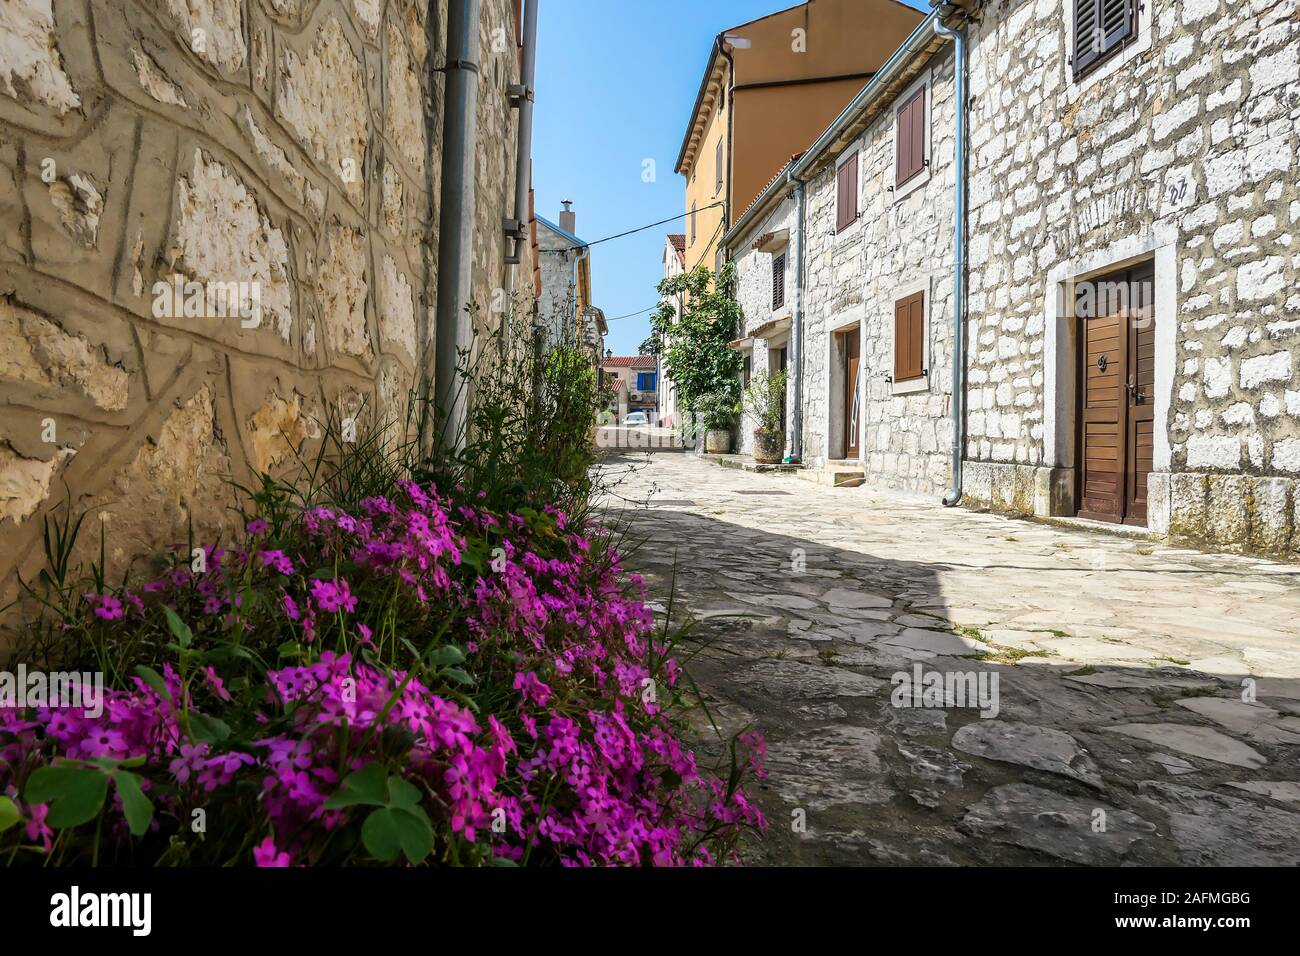 Una pequeña calle de adoquines en un país mediterráneo. Las casas en ambos lados están hechas de piedra. Hermosa ventana persianas. Hay flores violetas gr Foto de stock